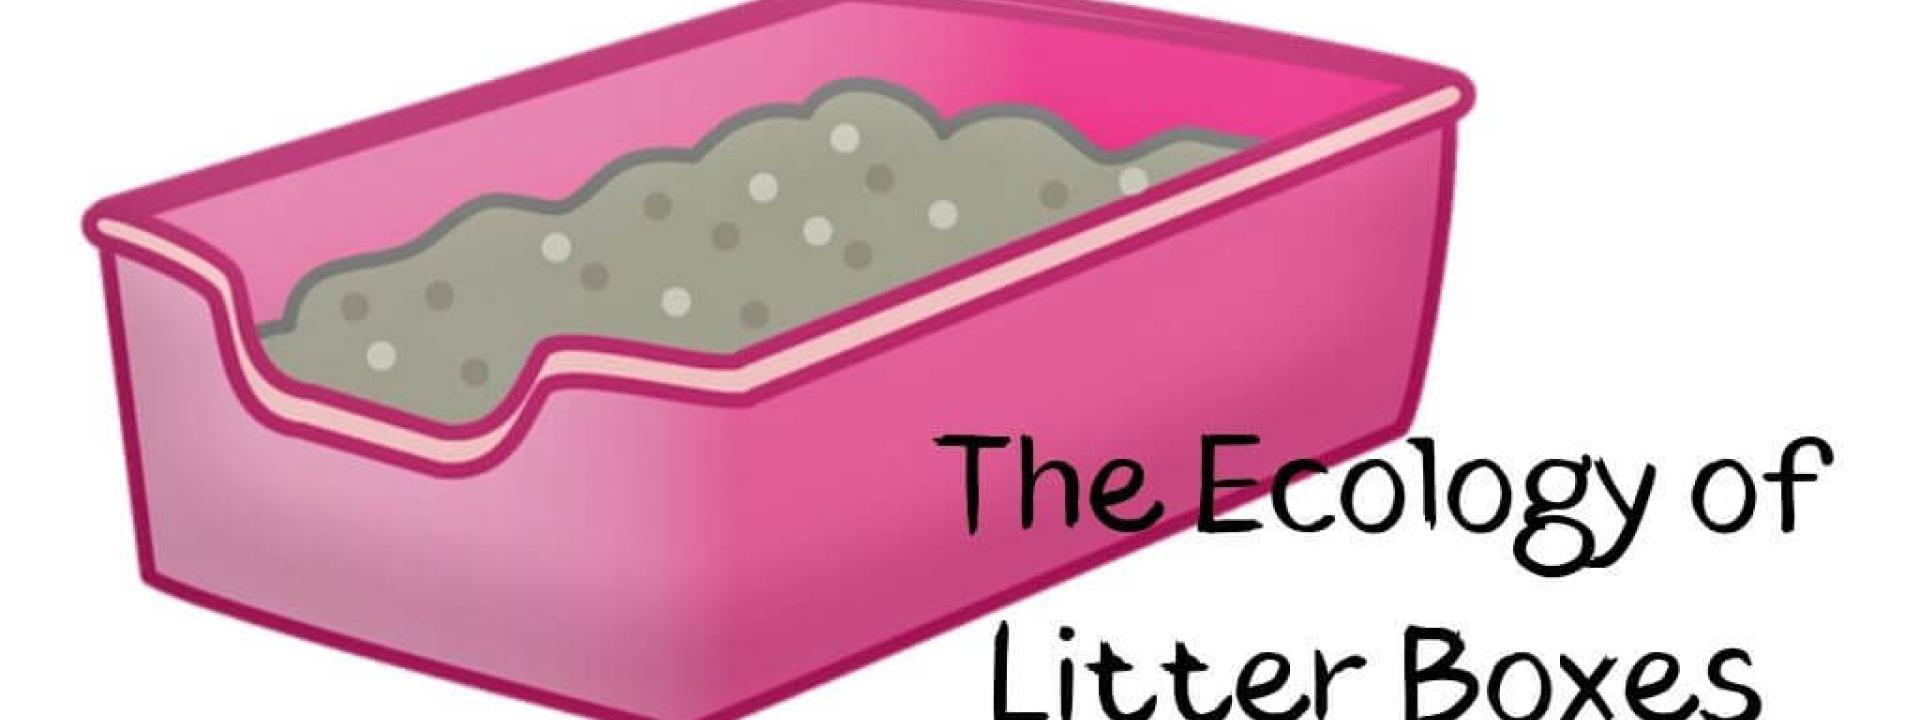 ecology-of-litter-boxes-blog-header.jpg